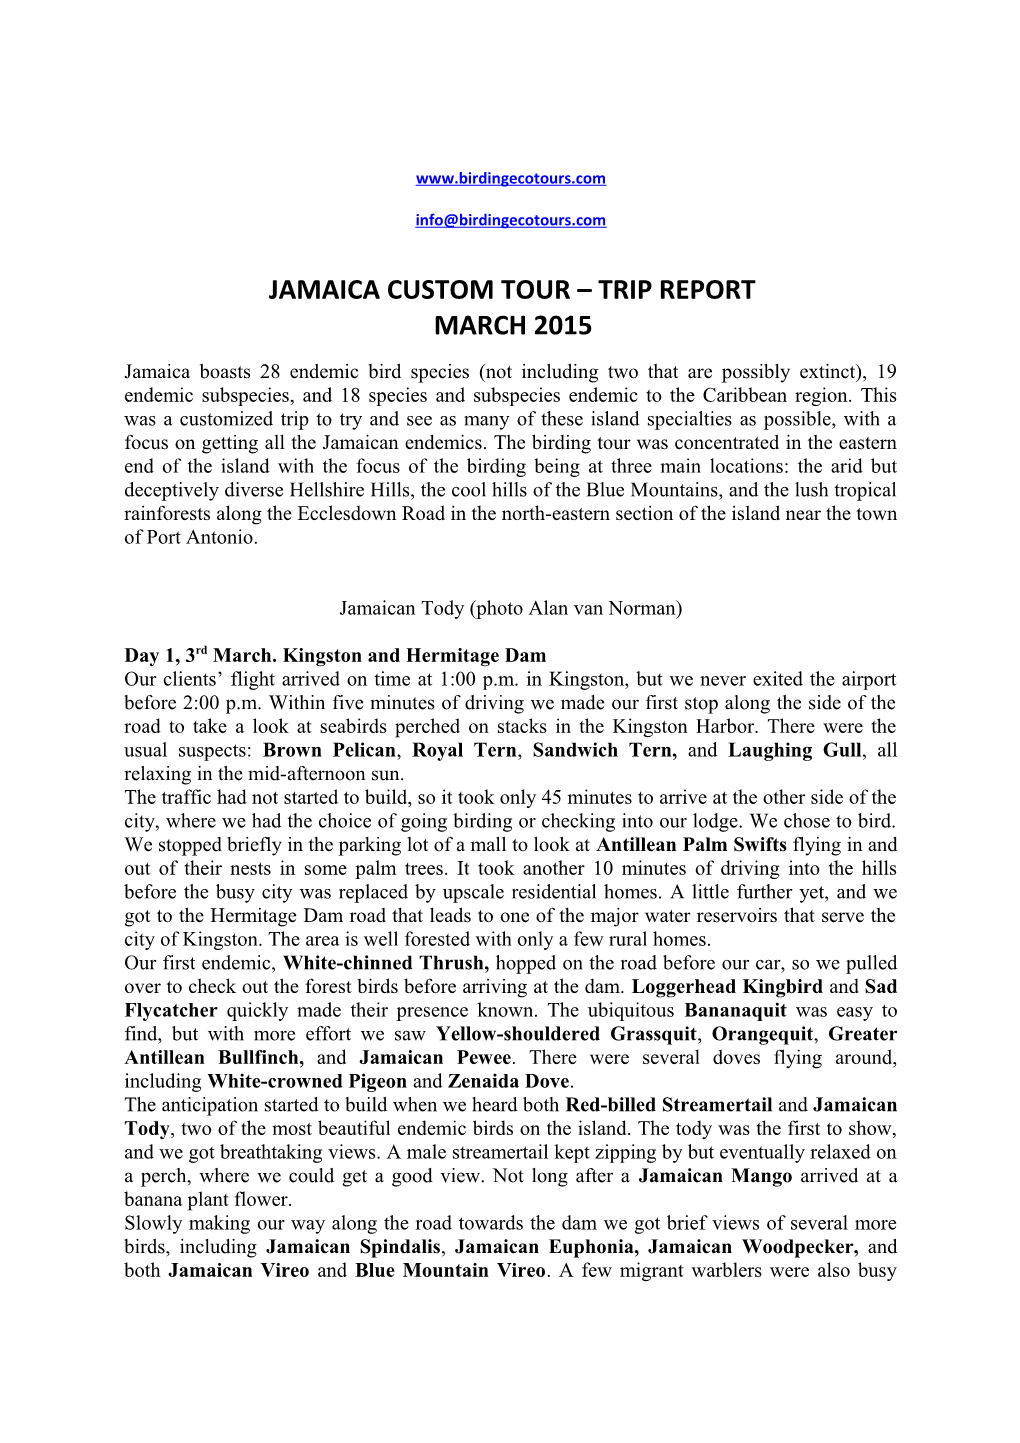 Jamaica Custom Tour Trip Report